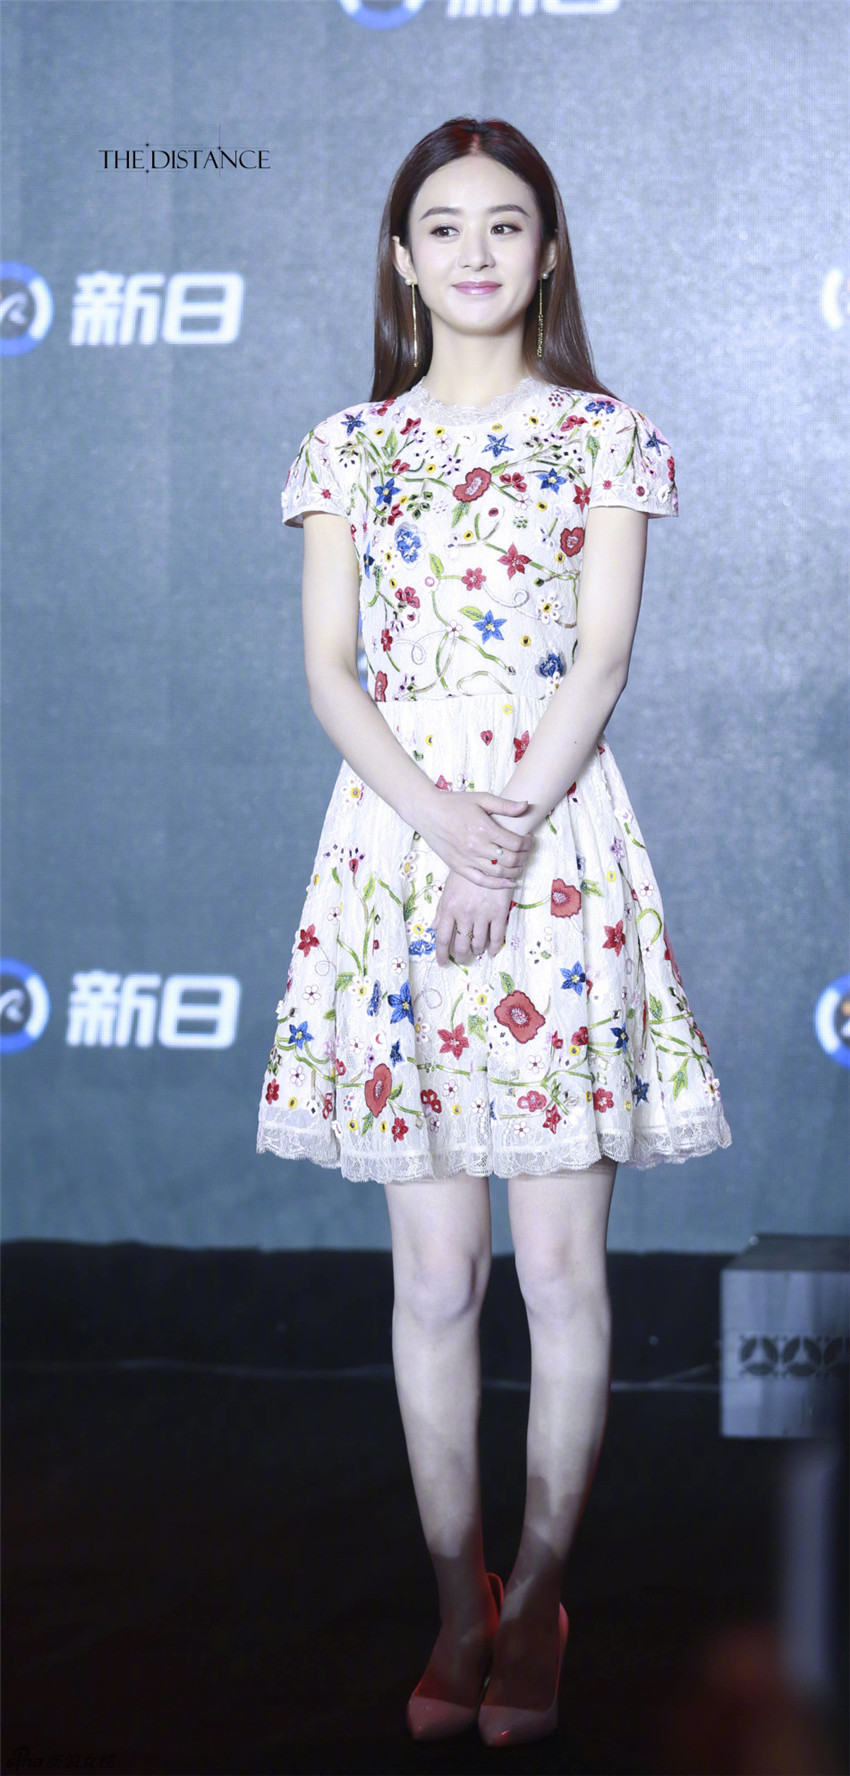 Se revelan nuevas fotos de la actriz china Zhao Liying